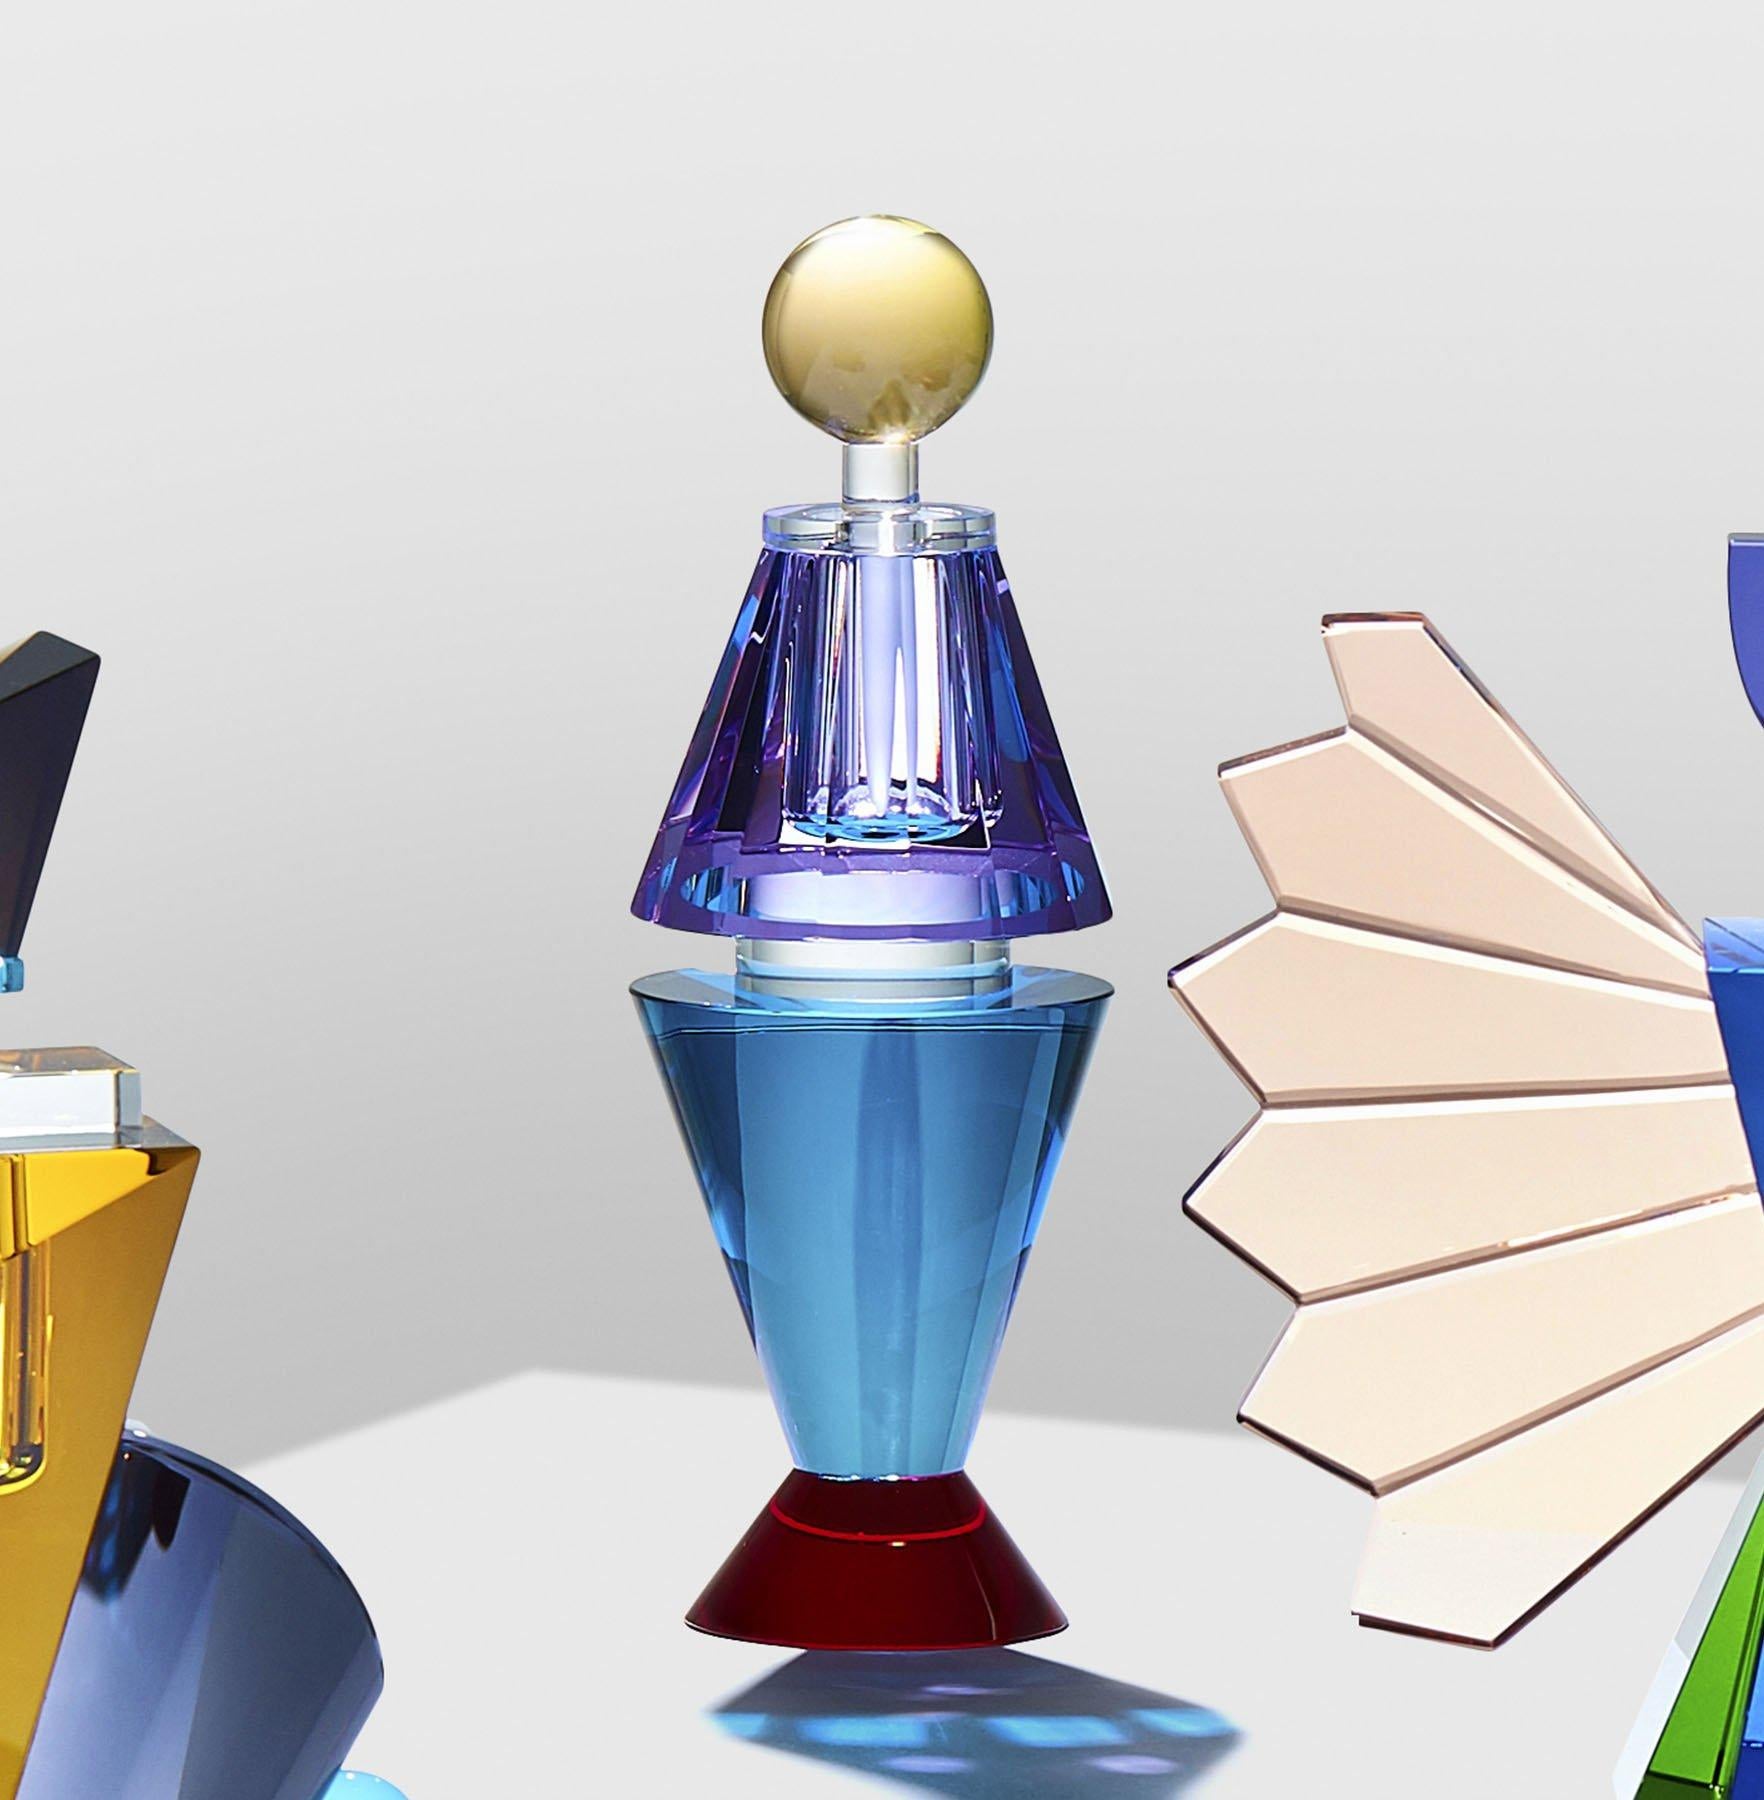 Flacon de parfum en cristal coloré, cristal contemporain sculpté à la main.
Sculptée à la main en cristal
Mesures : Petite
Hauteur 20 cm
Largeur 7 cm
Profondeur 7 cm
Poids 0,8 kg
MATERIAL : Cristal fin taillé à la main

La collection comprend 4